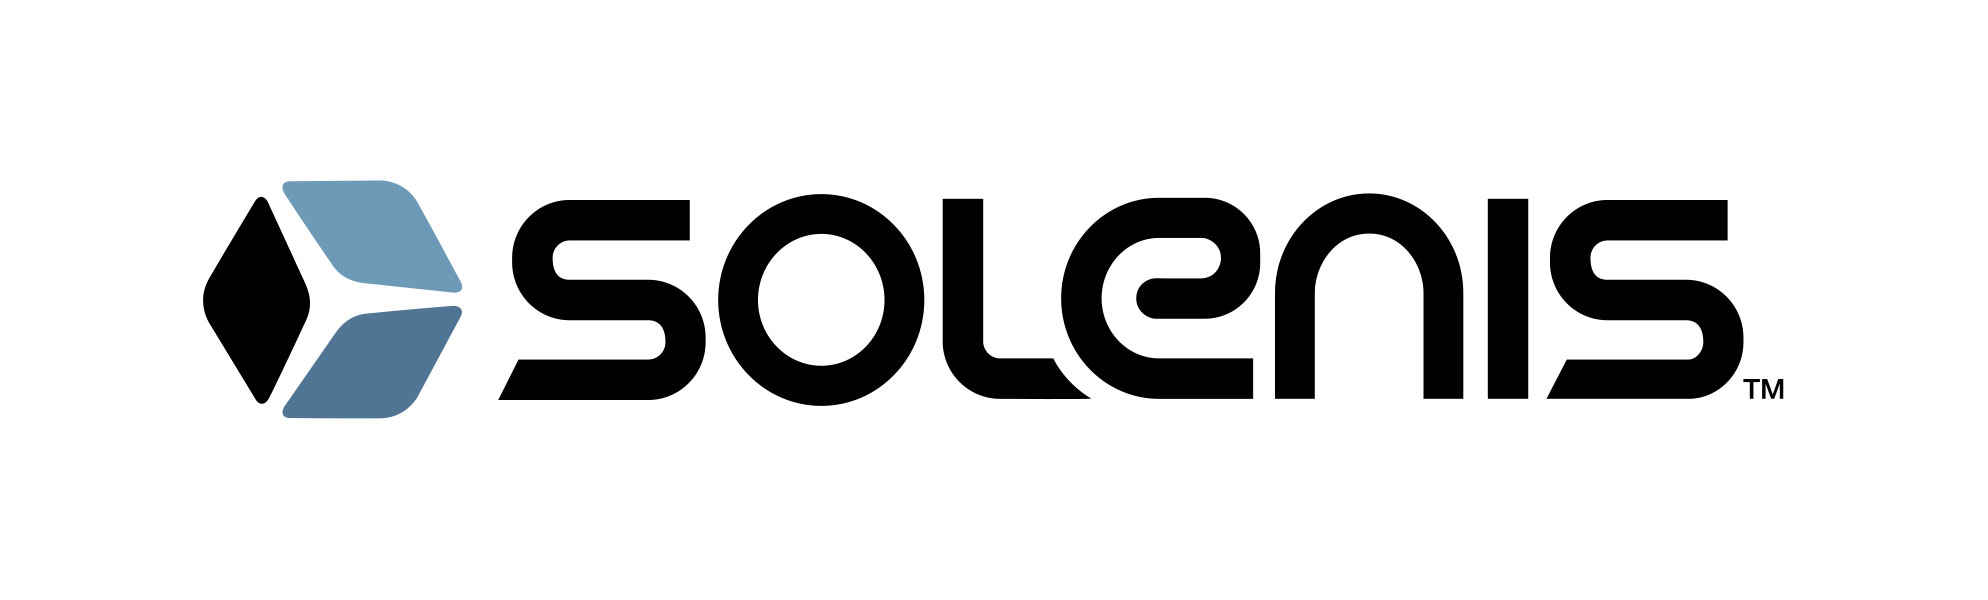 Solenis logo